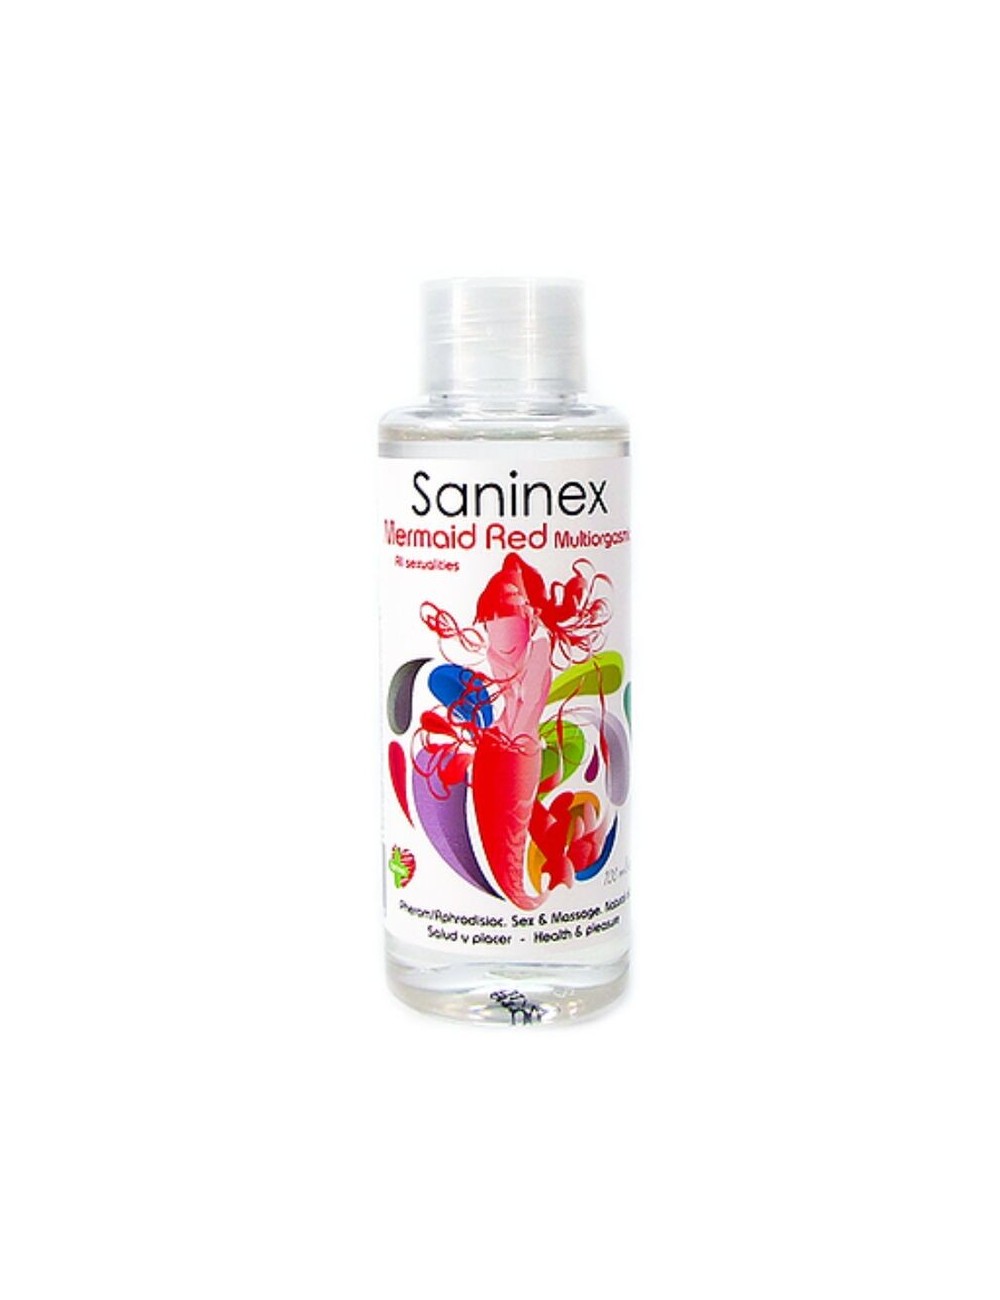 HUILE DE MASSAGE SIRÃNE ROUGE SANINEX 100 ML - Huiles de massage - Saninex Oils/lubes